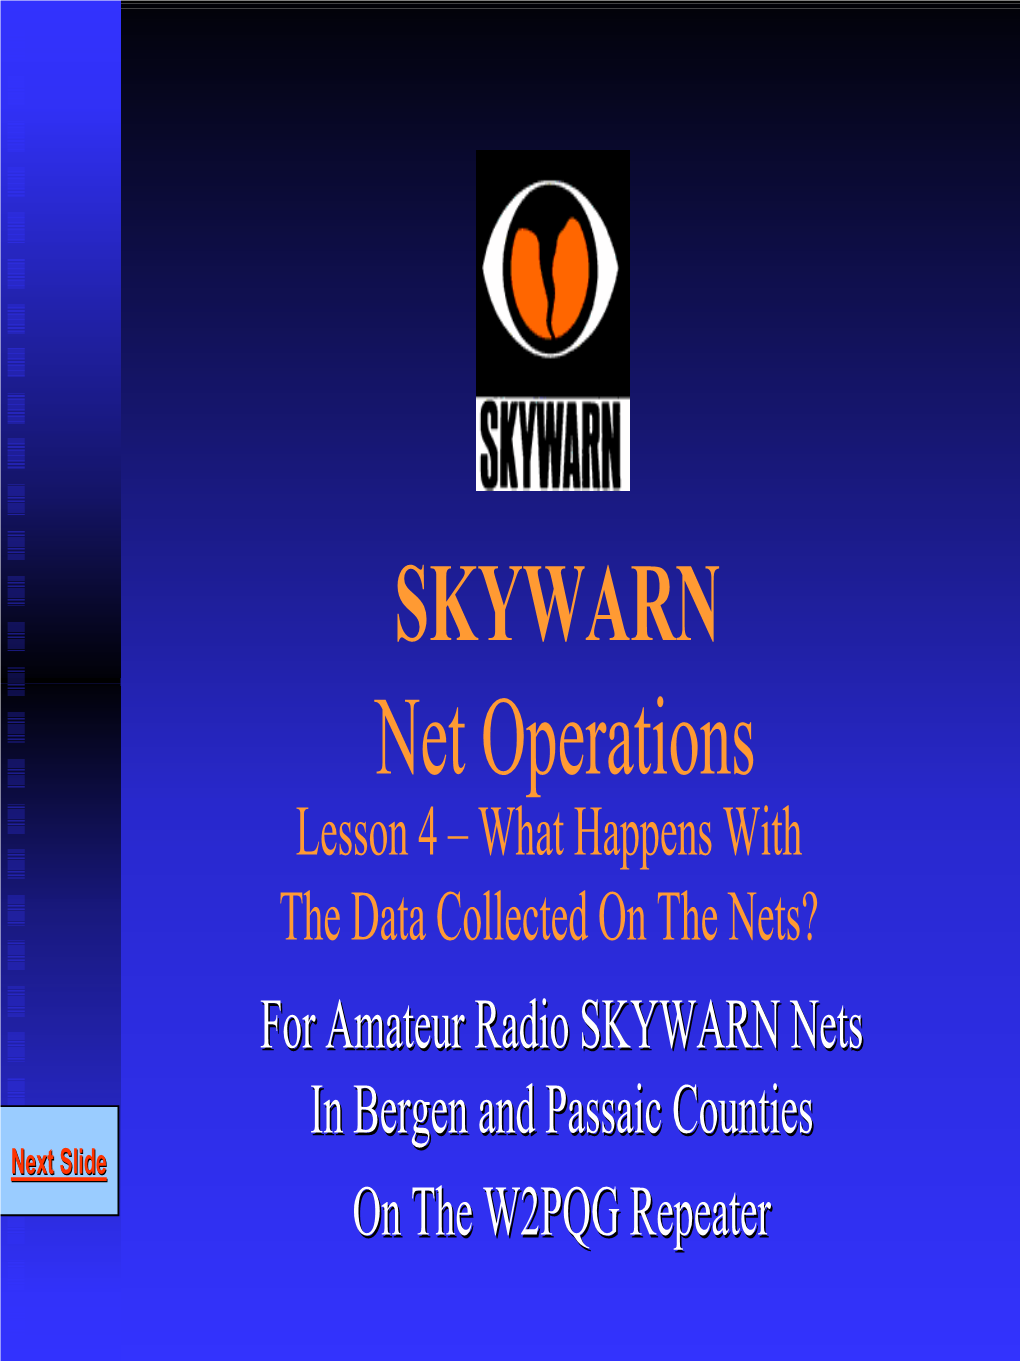 Bergen and Passaic County SKYWARN Net Operations